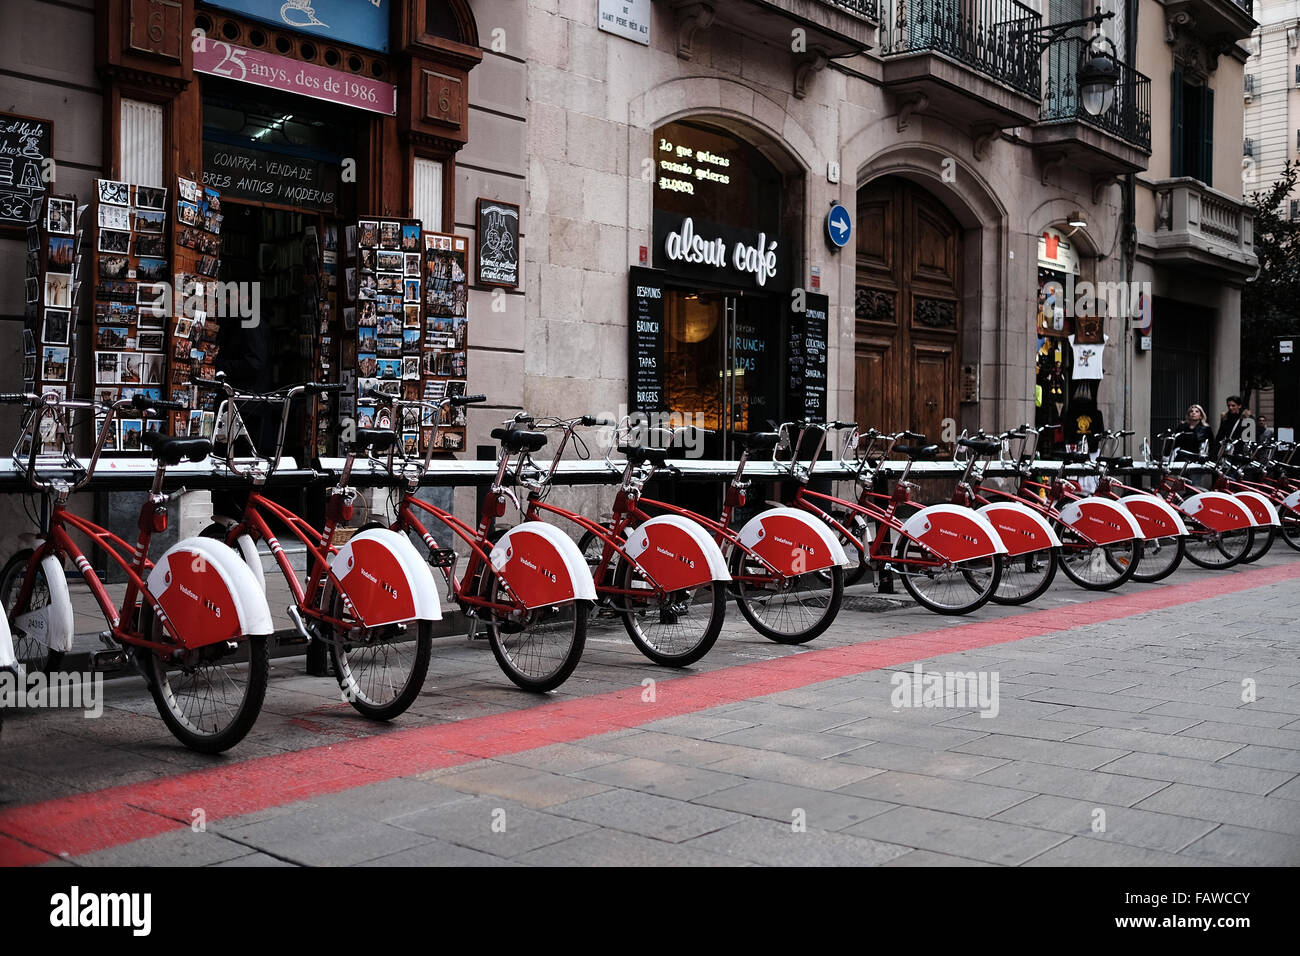 Alquiler de bicicletas de la ciudad de Barcelona y el soporte de la bici.  Transporte público Fotografía de stock - Alamy